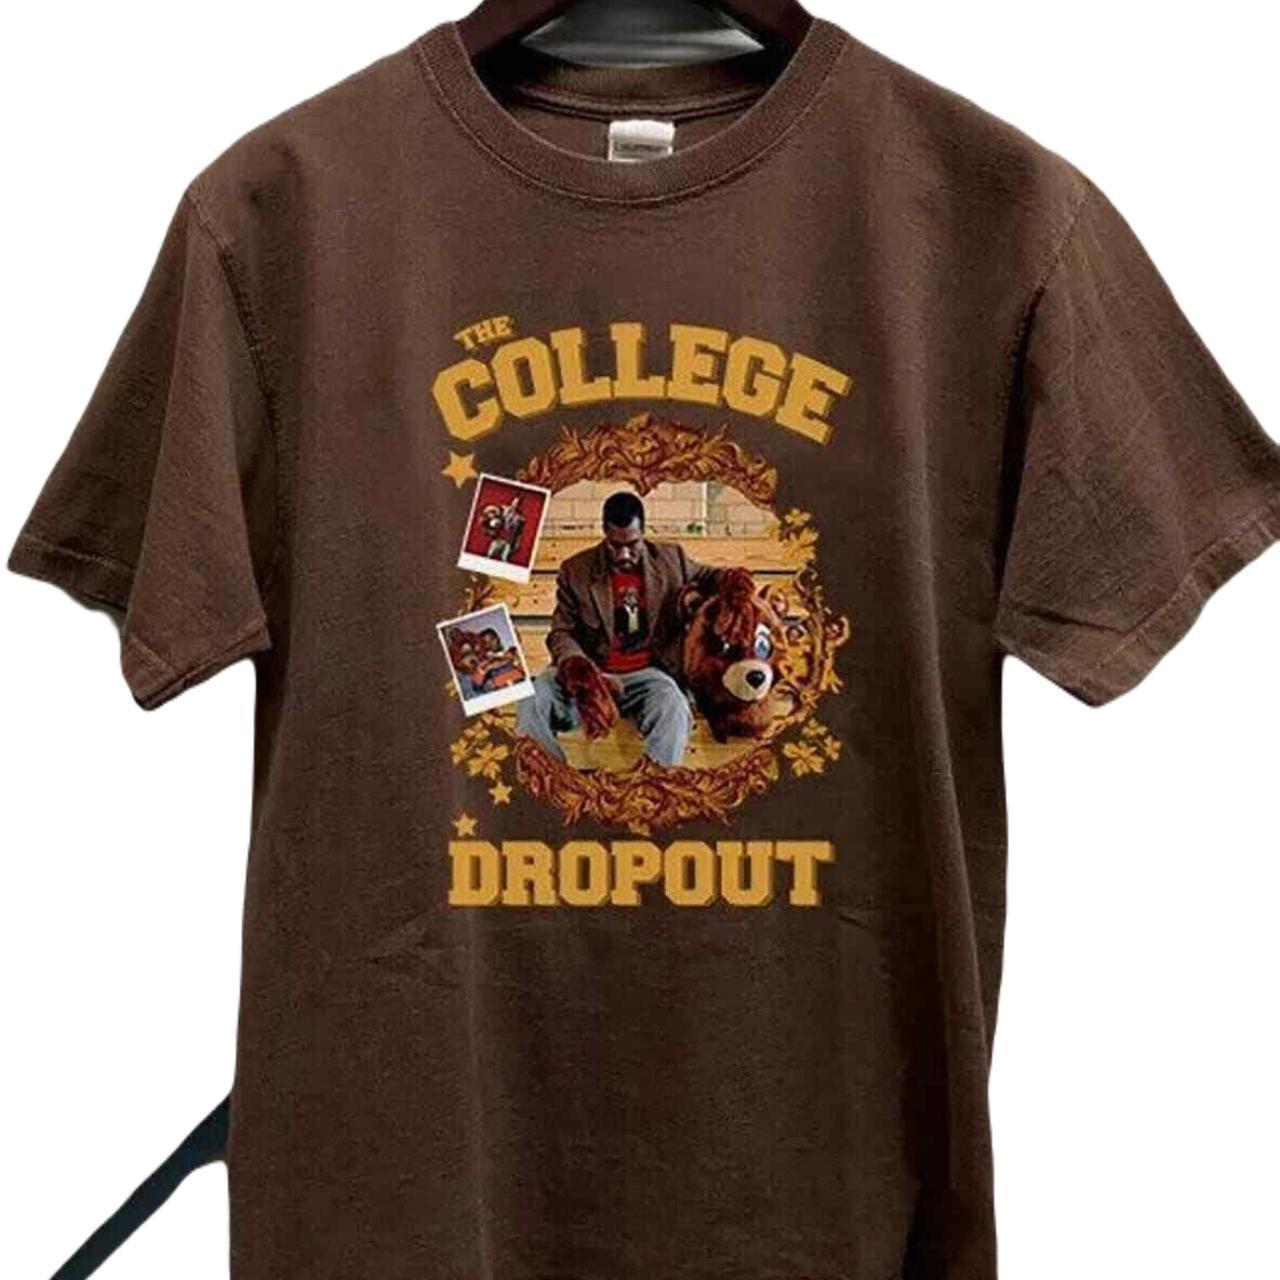 College Dropout' Men's T-Shirt